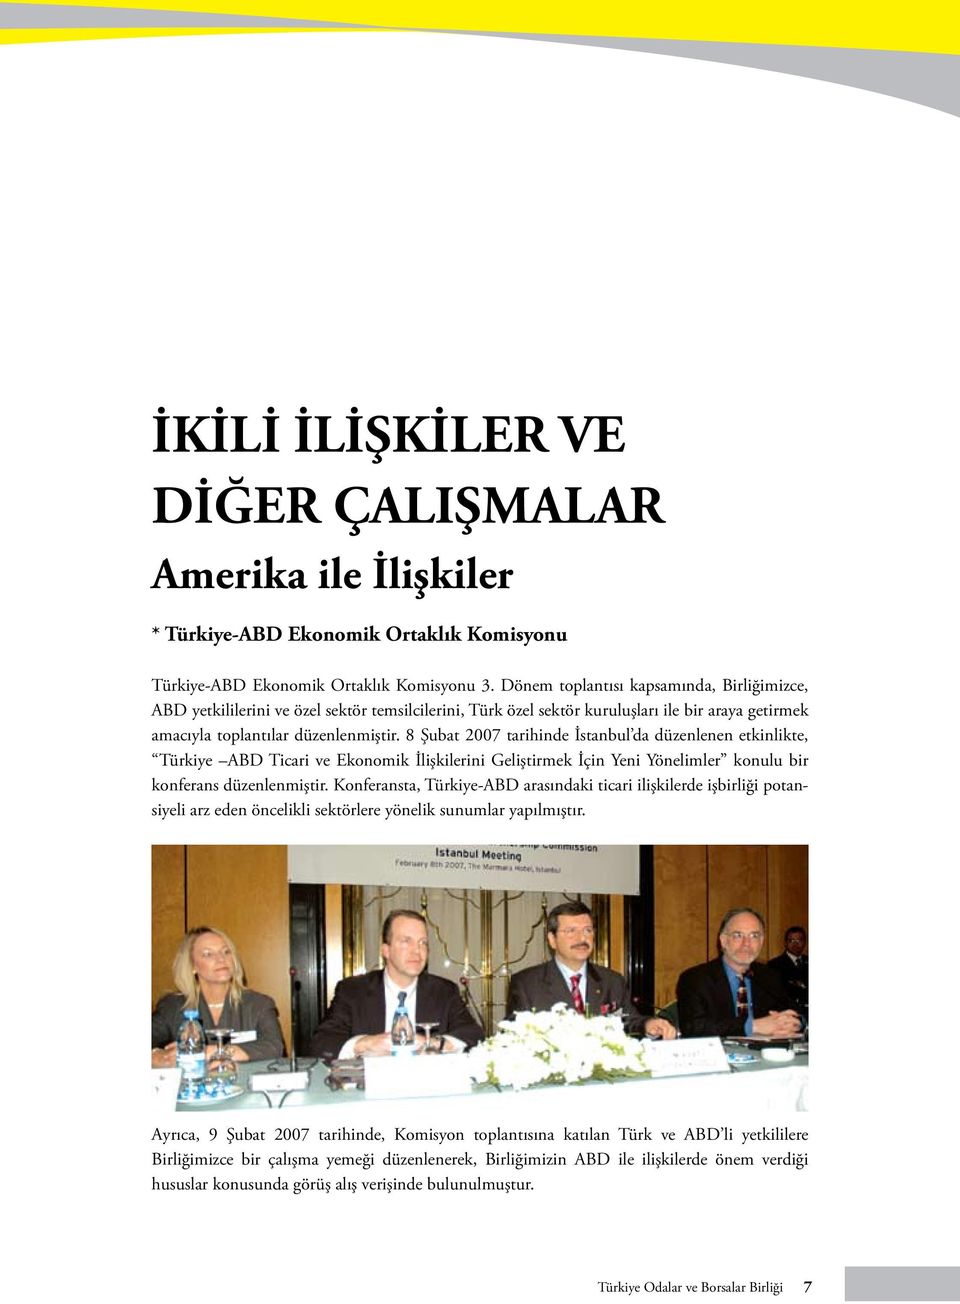 8 Şubat 2007 tarihinde İstanbul da düzenlenen etkinlikte, Türkiye ABD Ticari ve Ekonomik İlişkilerini Geliştirmek İçin Yeni Yönelimler konulu bir konferans düzenlenmiştir.